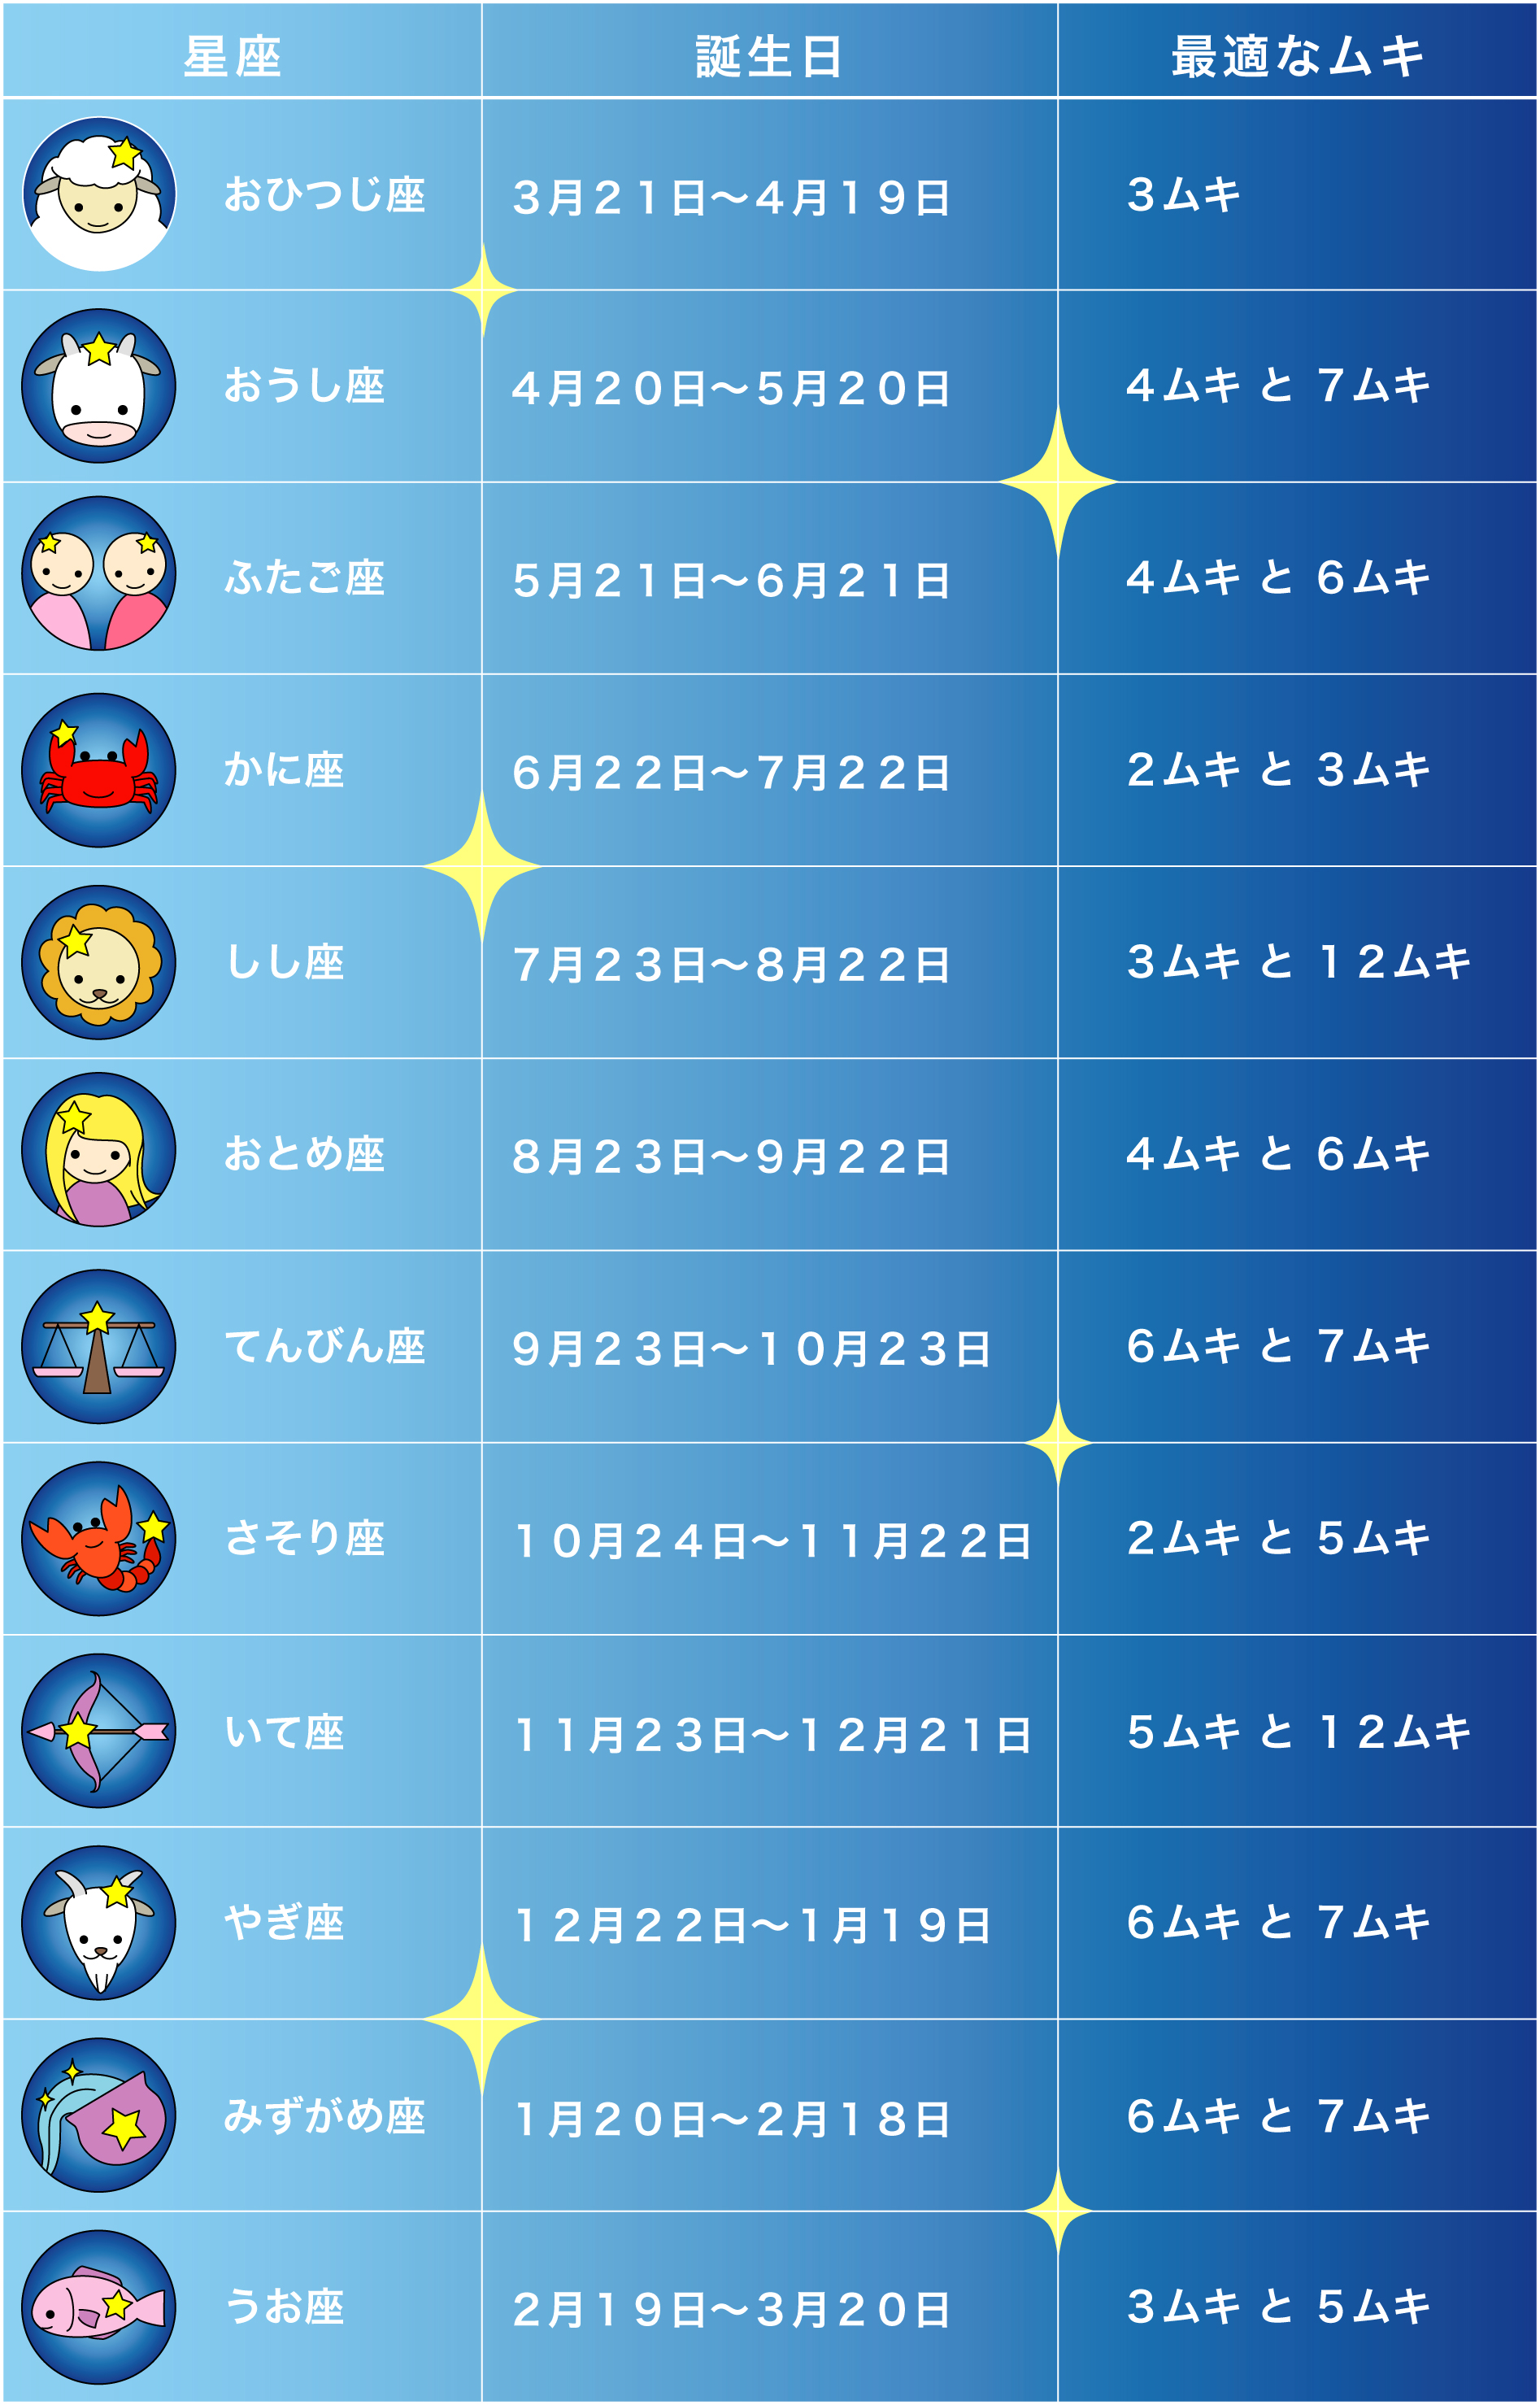 星座とルドラクシャ(菩提樹の実)のチャート表